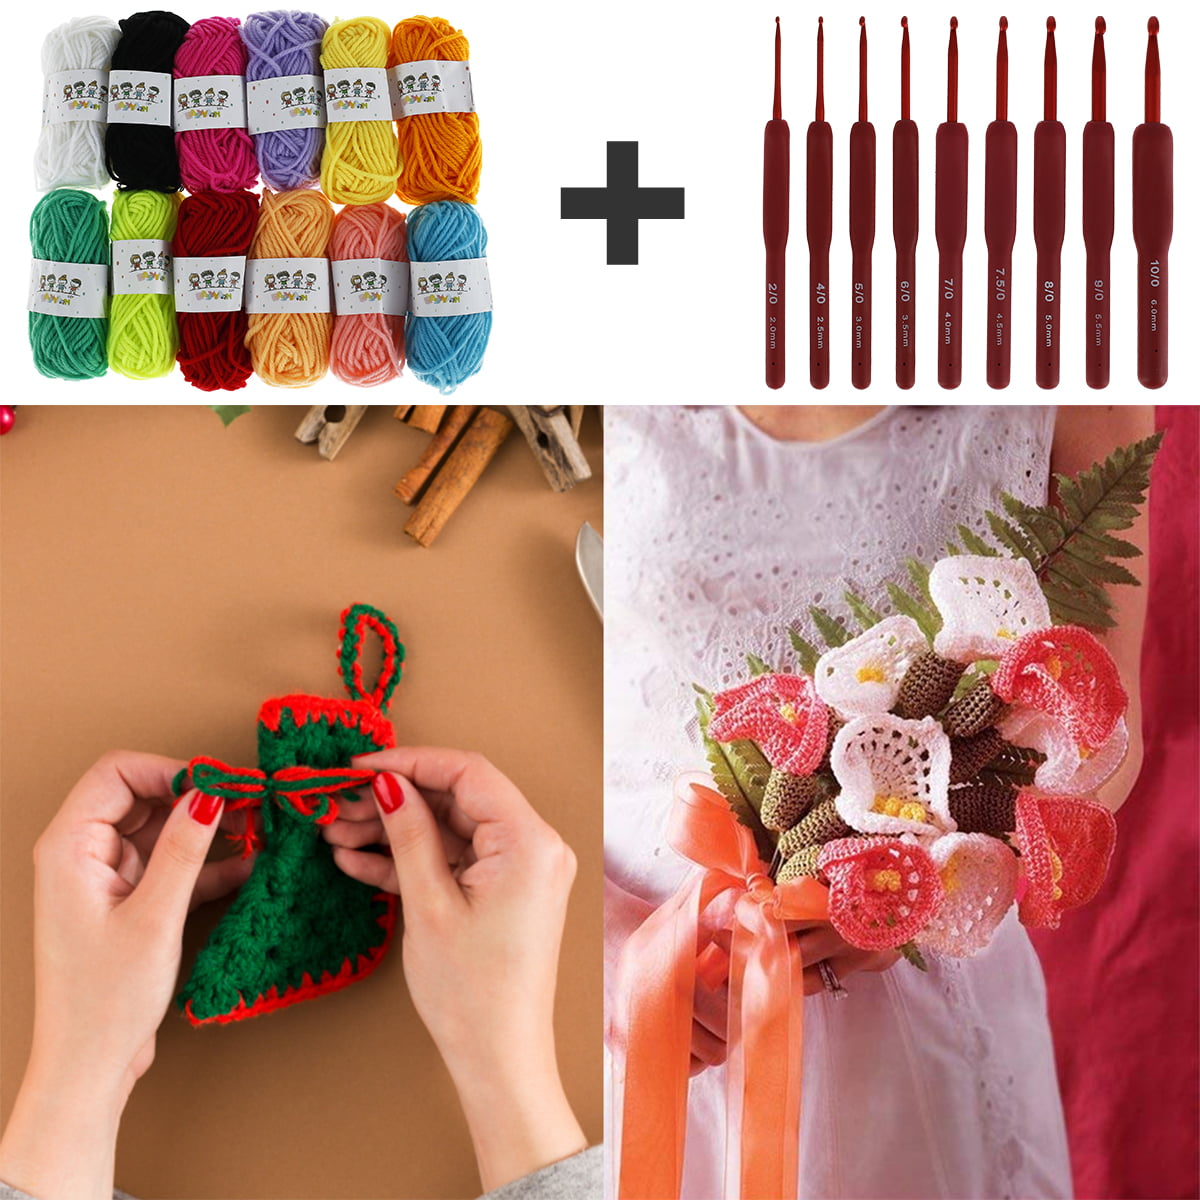 Learn to Crochet Kit – Spun